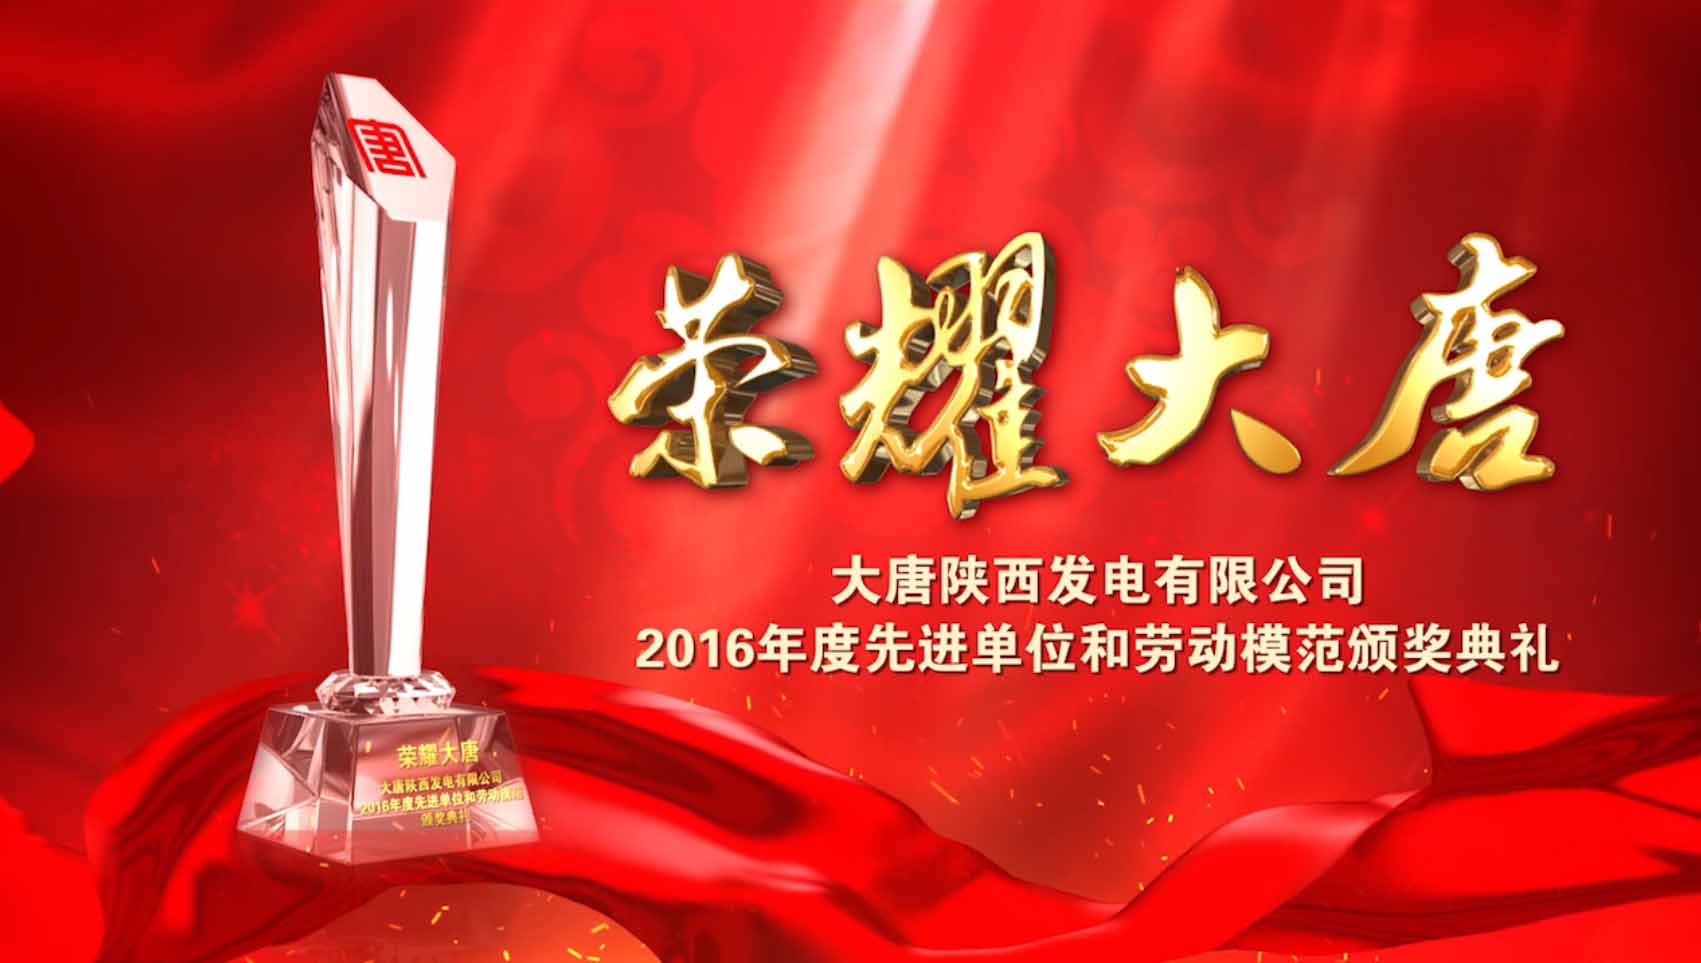 大唐陕西发电有限公司2016年度先进单位和劳动模范颁奖典礼